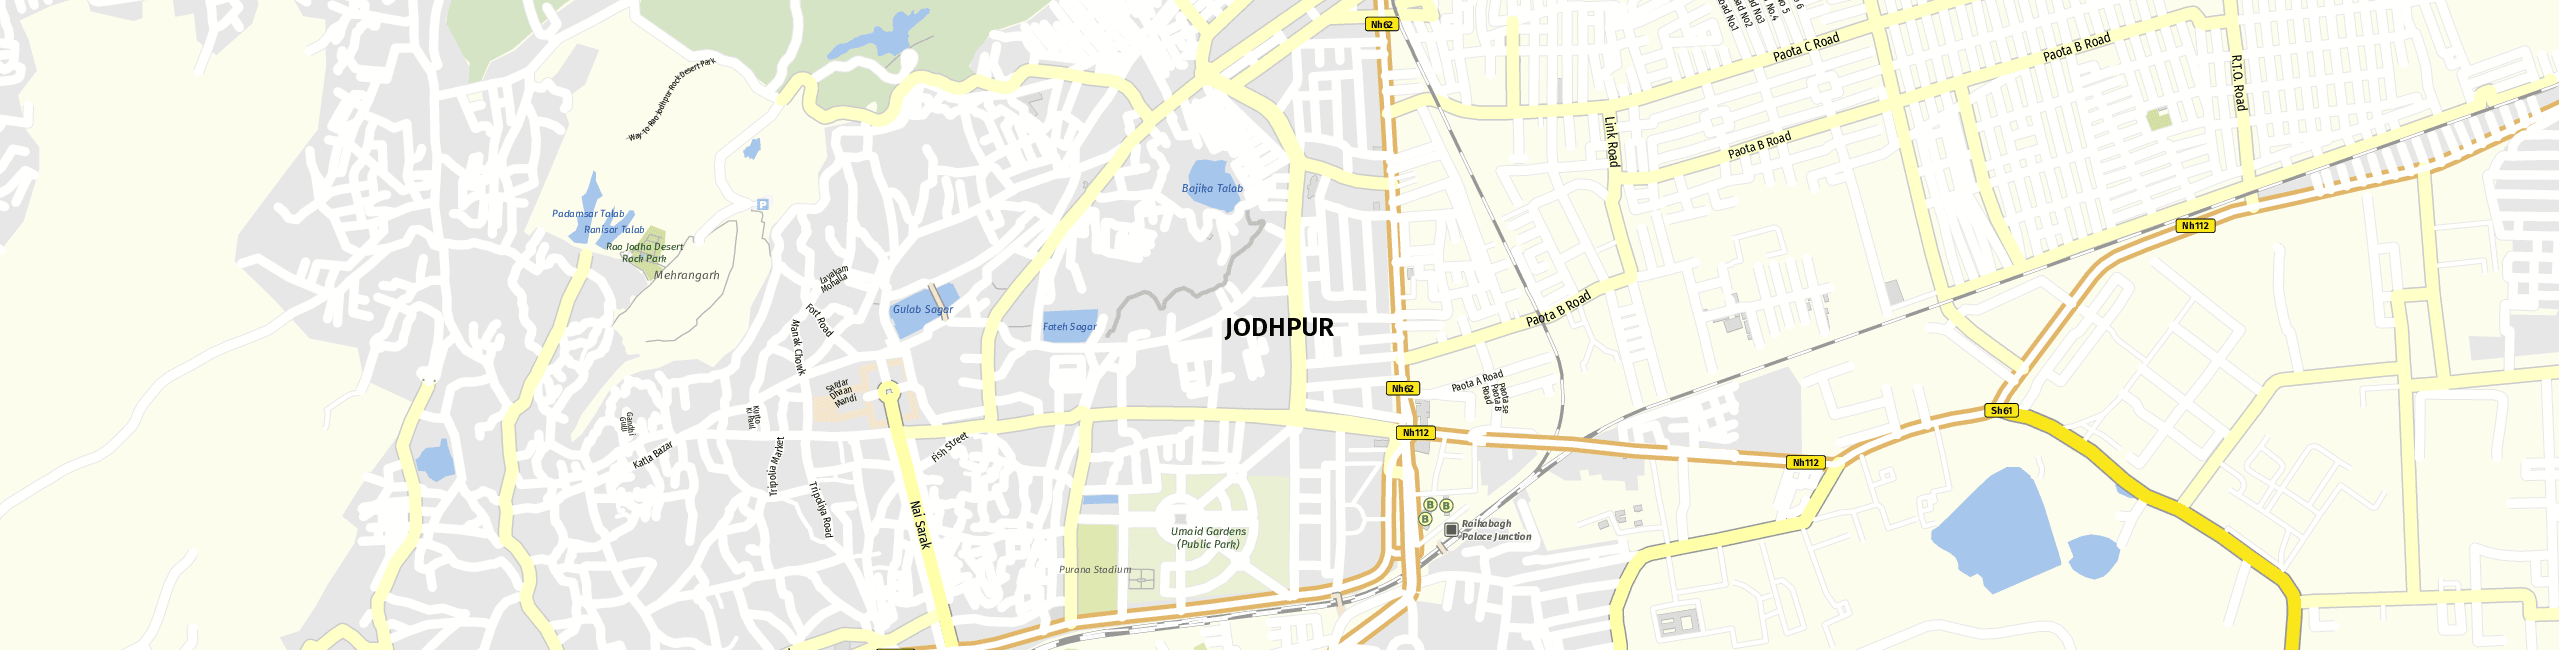 Stadtplan Jodhpur zum Downloaden.